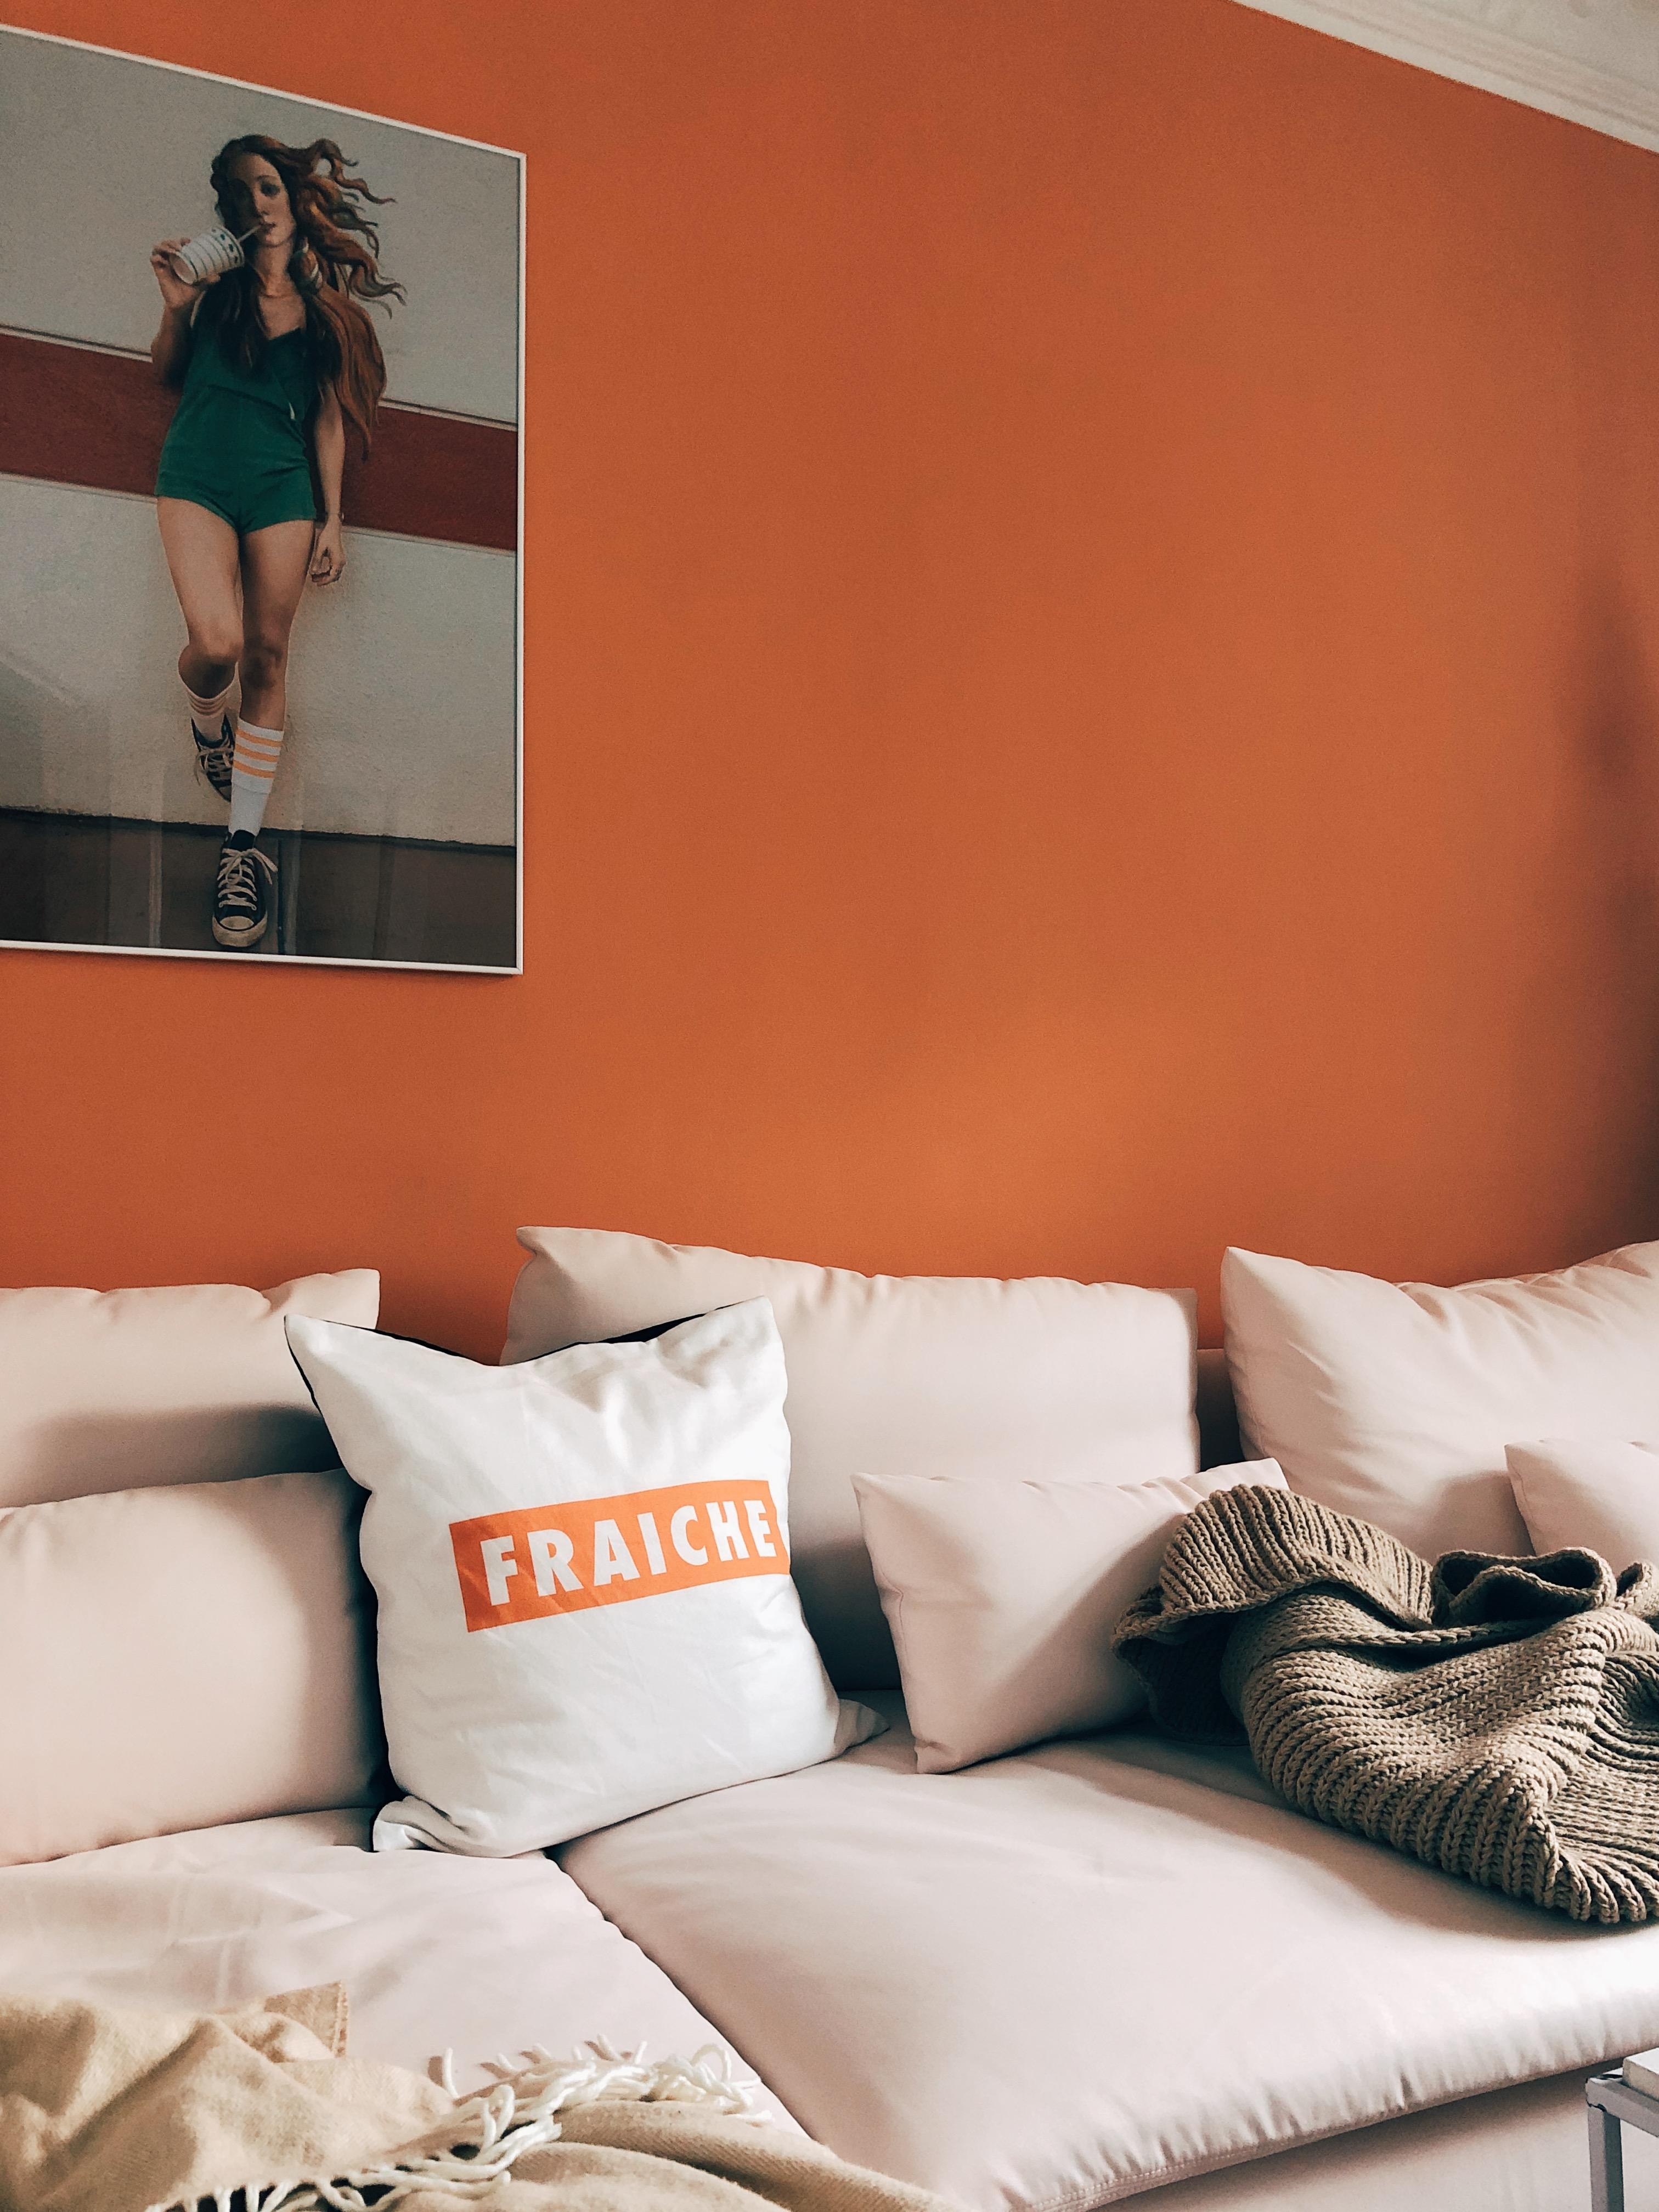 Ziemlich fraiche hier. #wohnzimmer #wandfarbe #orange #kunst #sofa #rosa #couch #couchstyle #deko